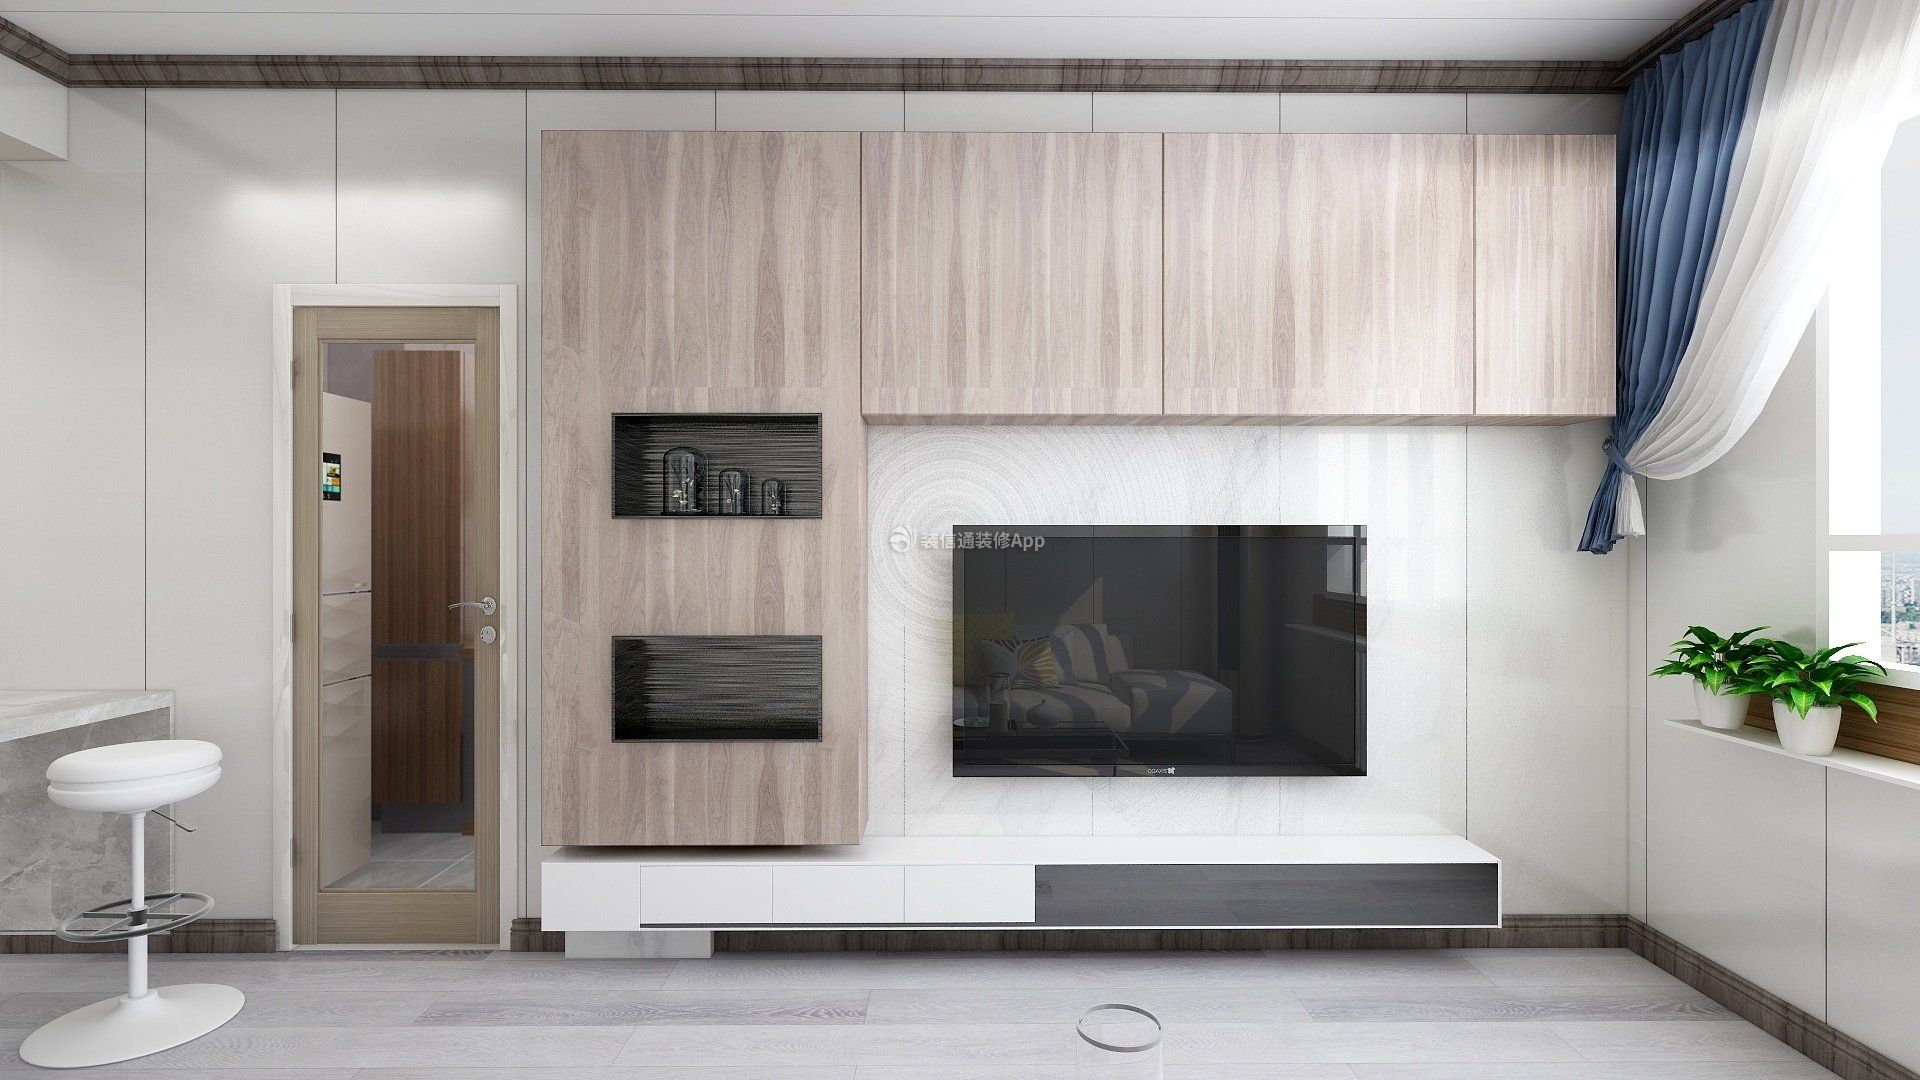 87平米现代风格二居室客厅电视墙装修效果图